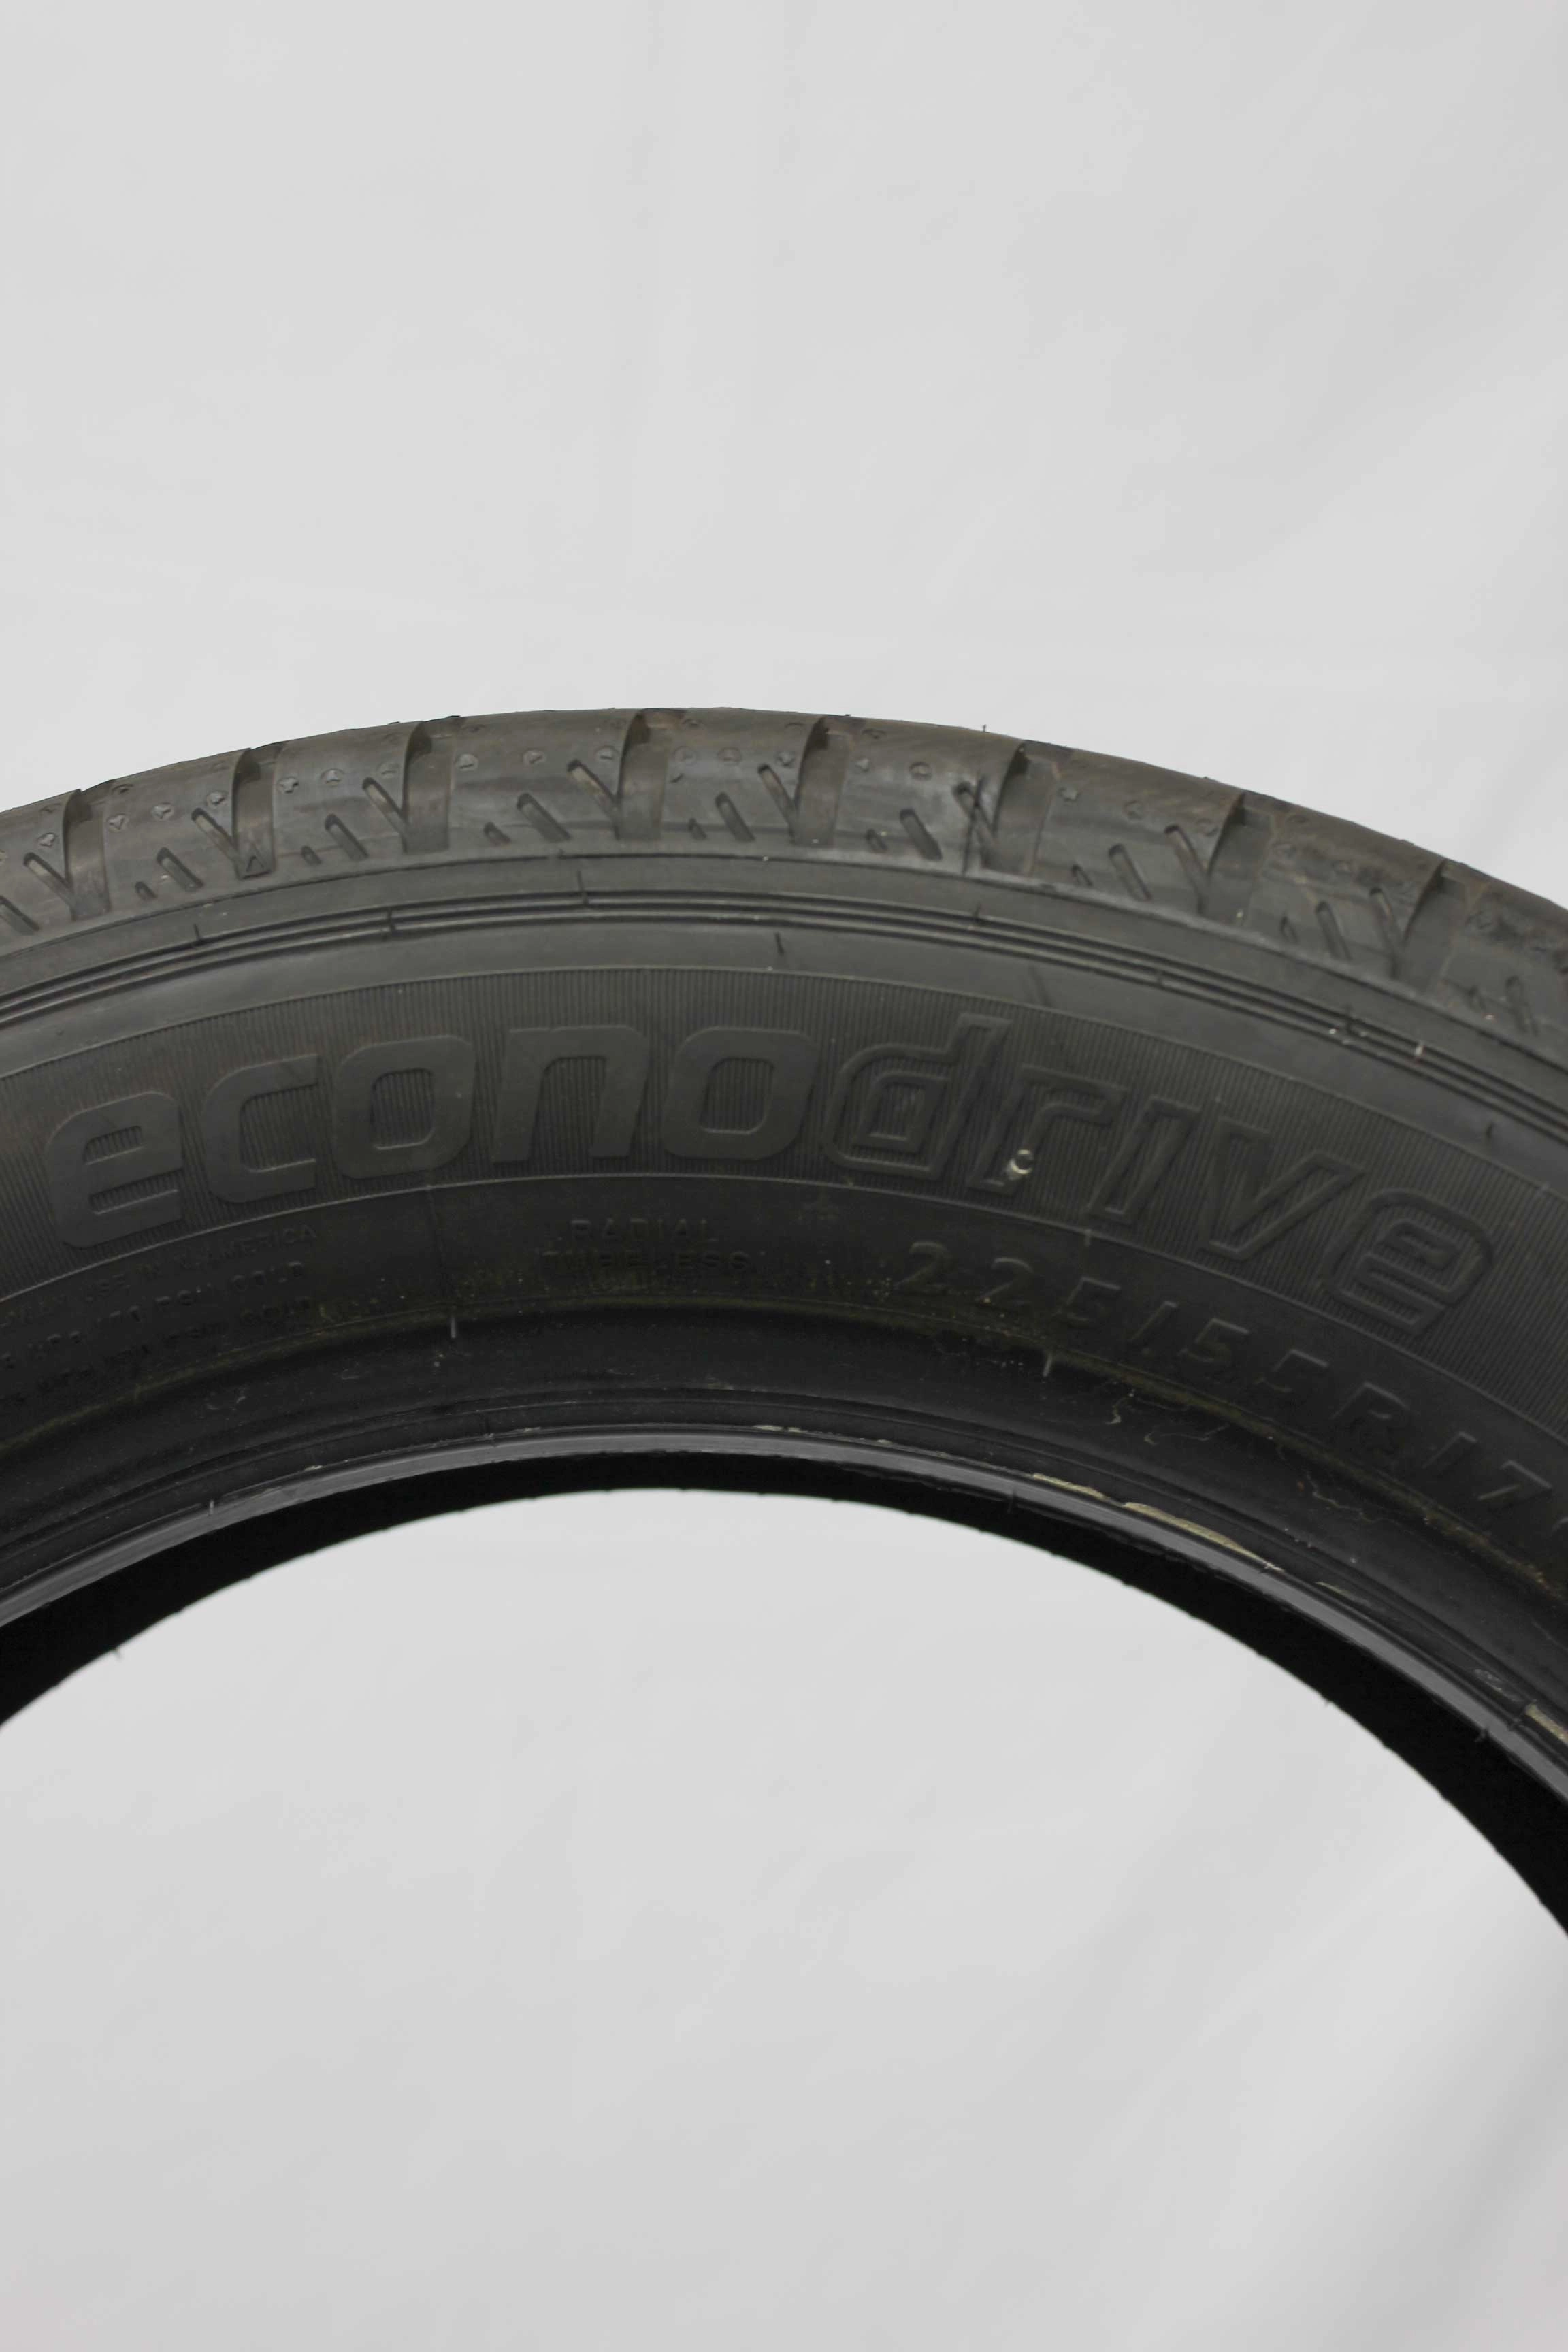 Sommerreifen-Dunlop-Econodrive-225-55-R17-109-107H-2_(7)